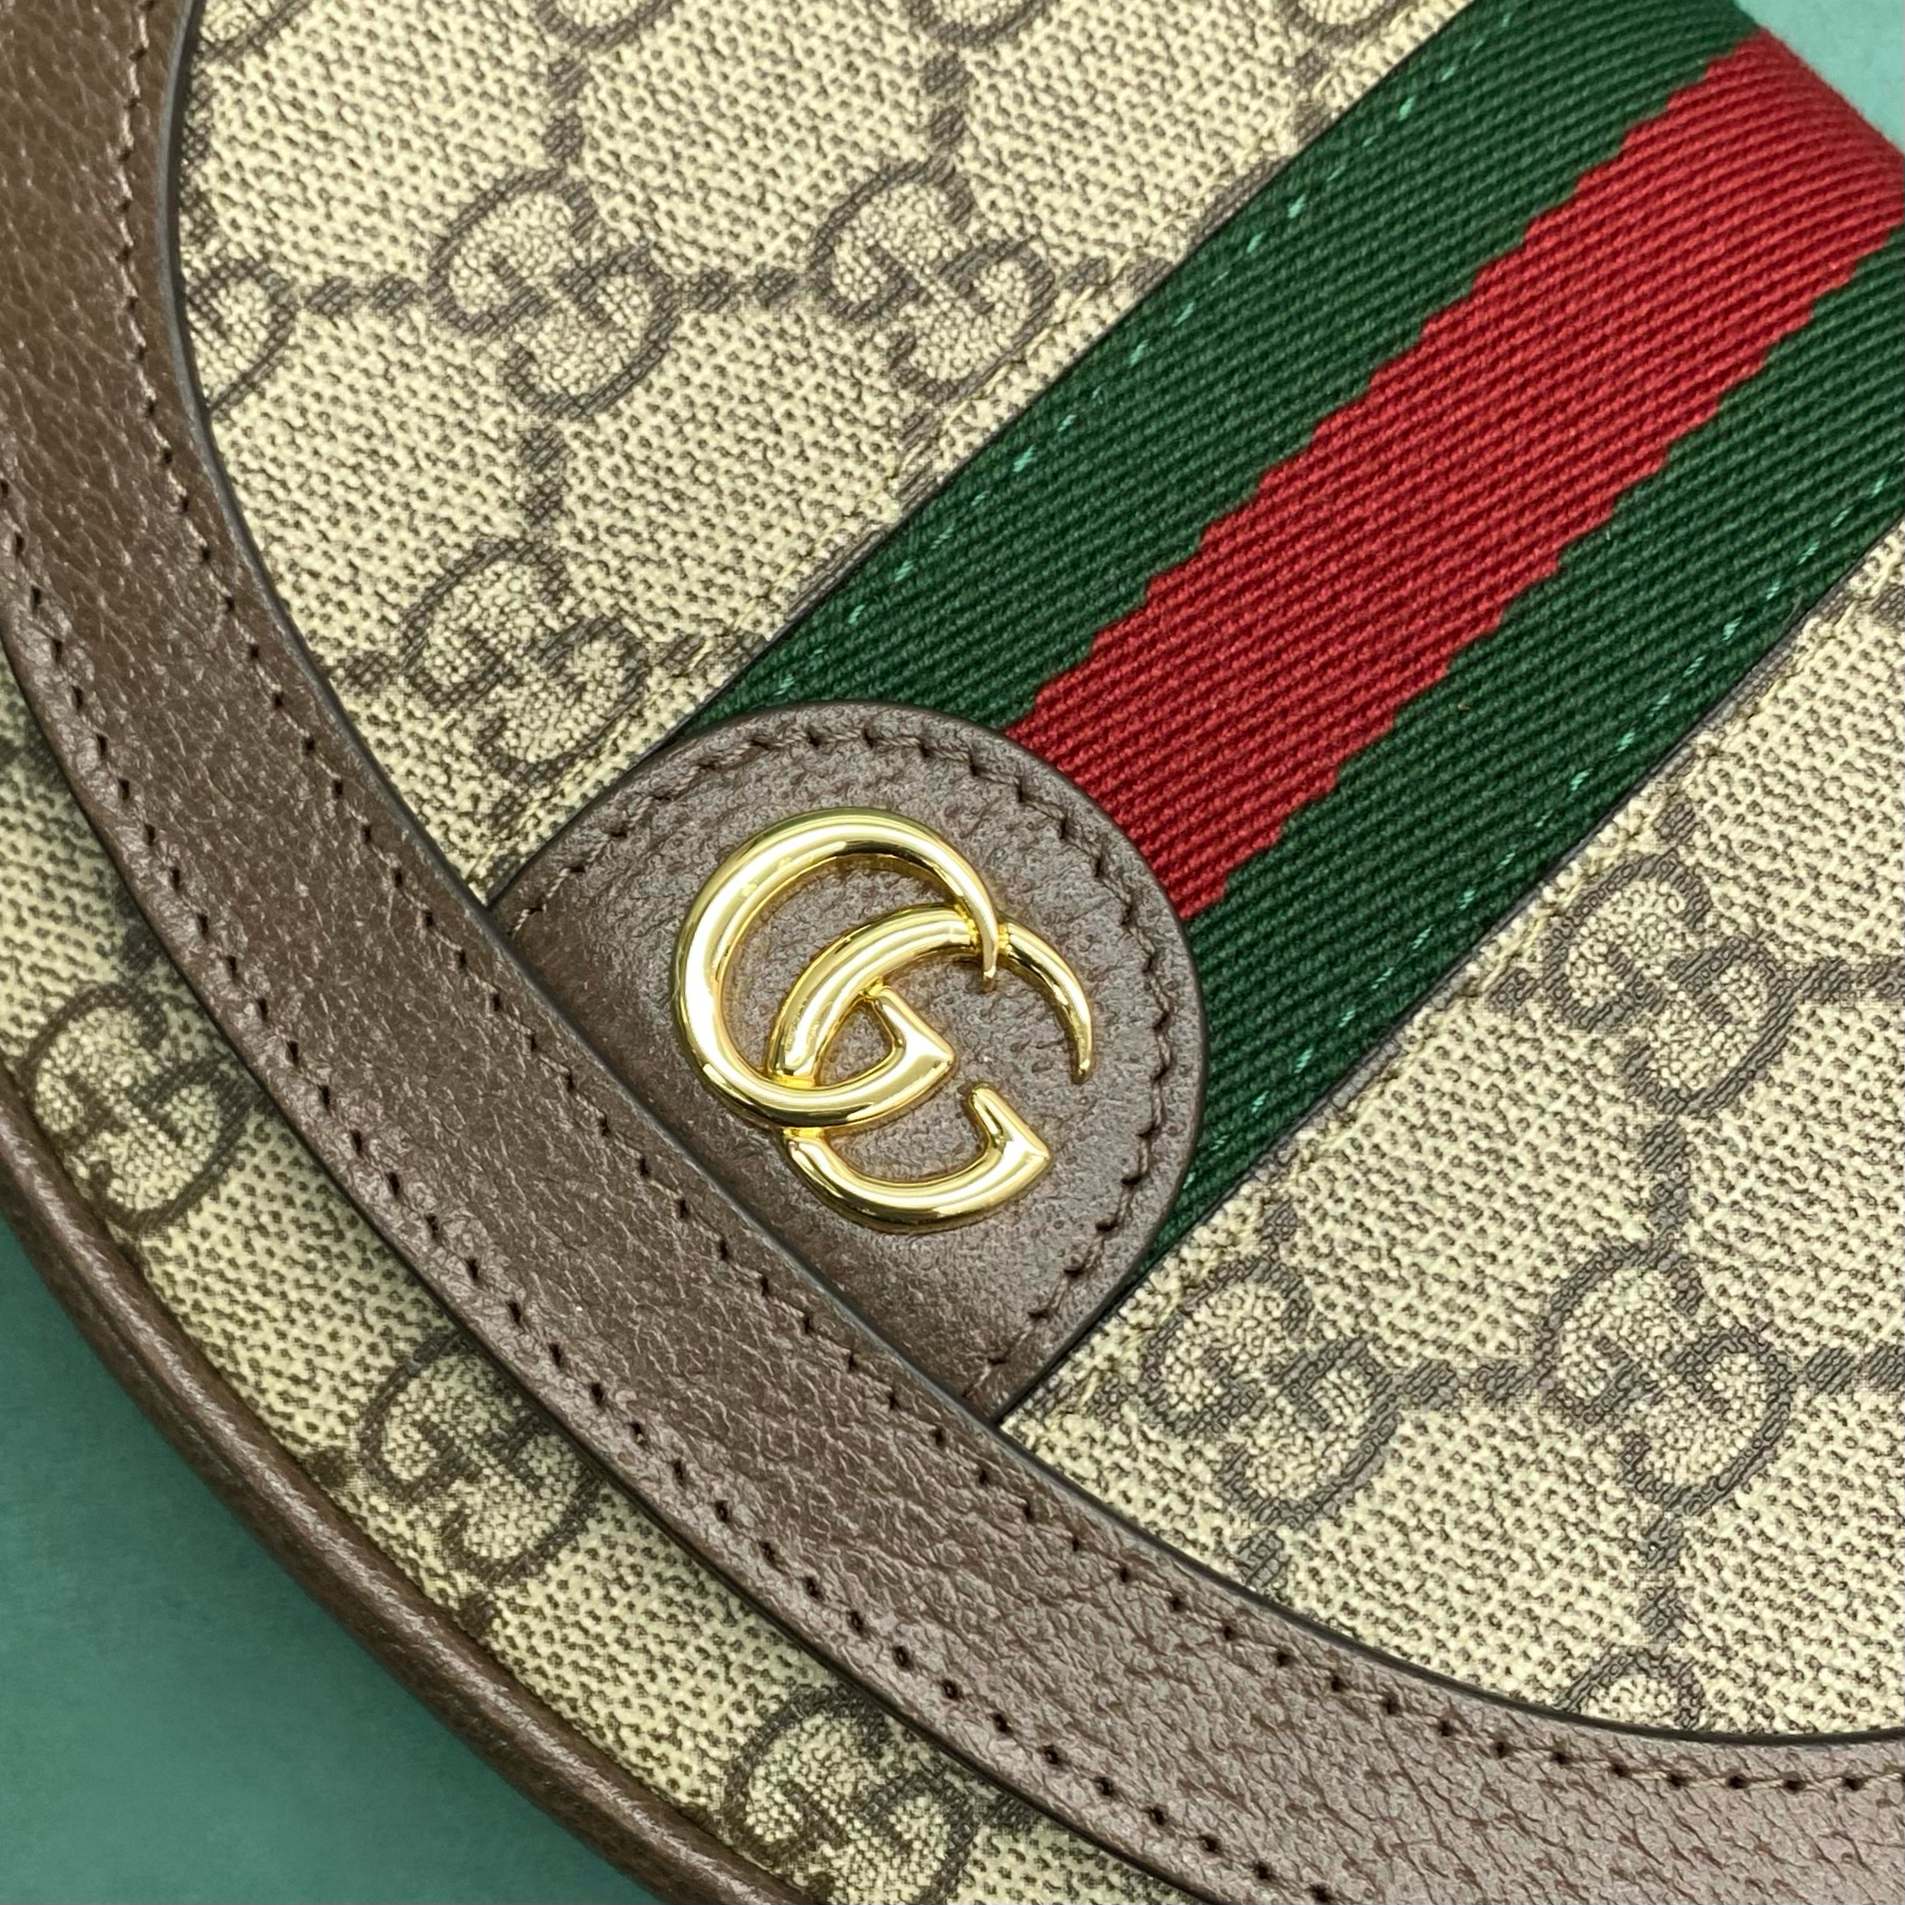 【P980】Gucci Ophidia系列月牙包 古驰红绿织带经典老花帆布配皮斜挎包757309